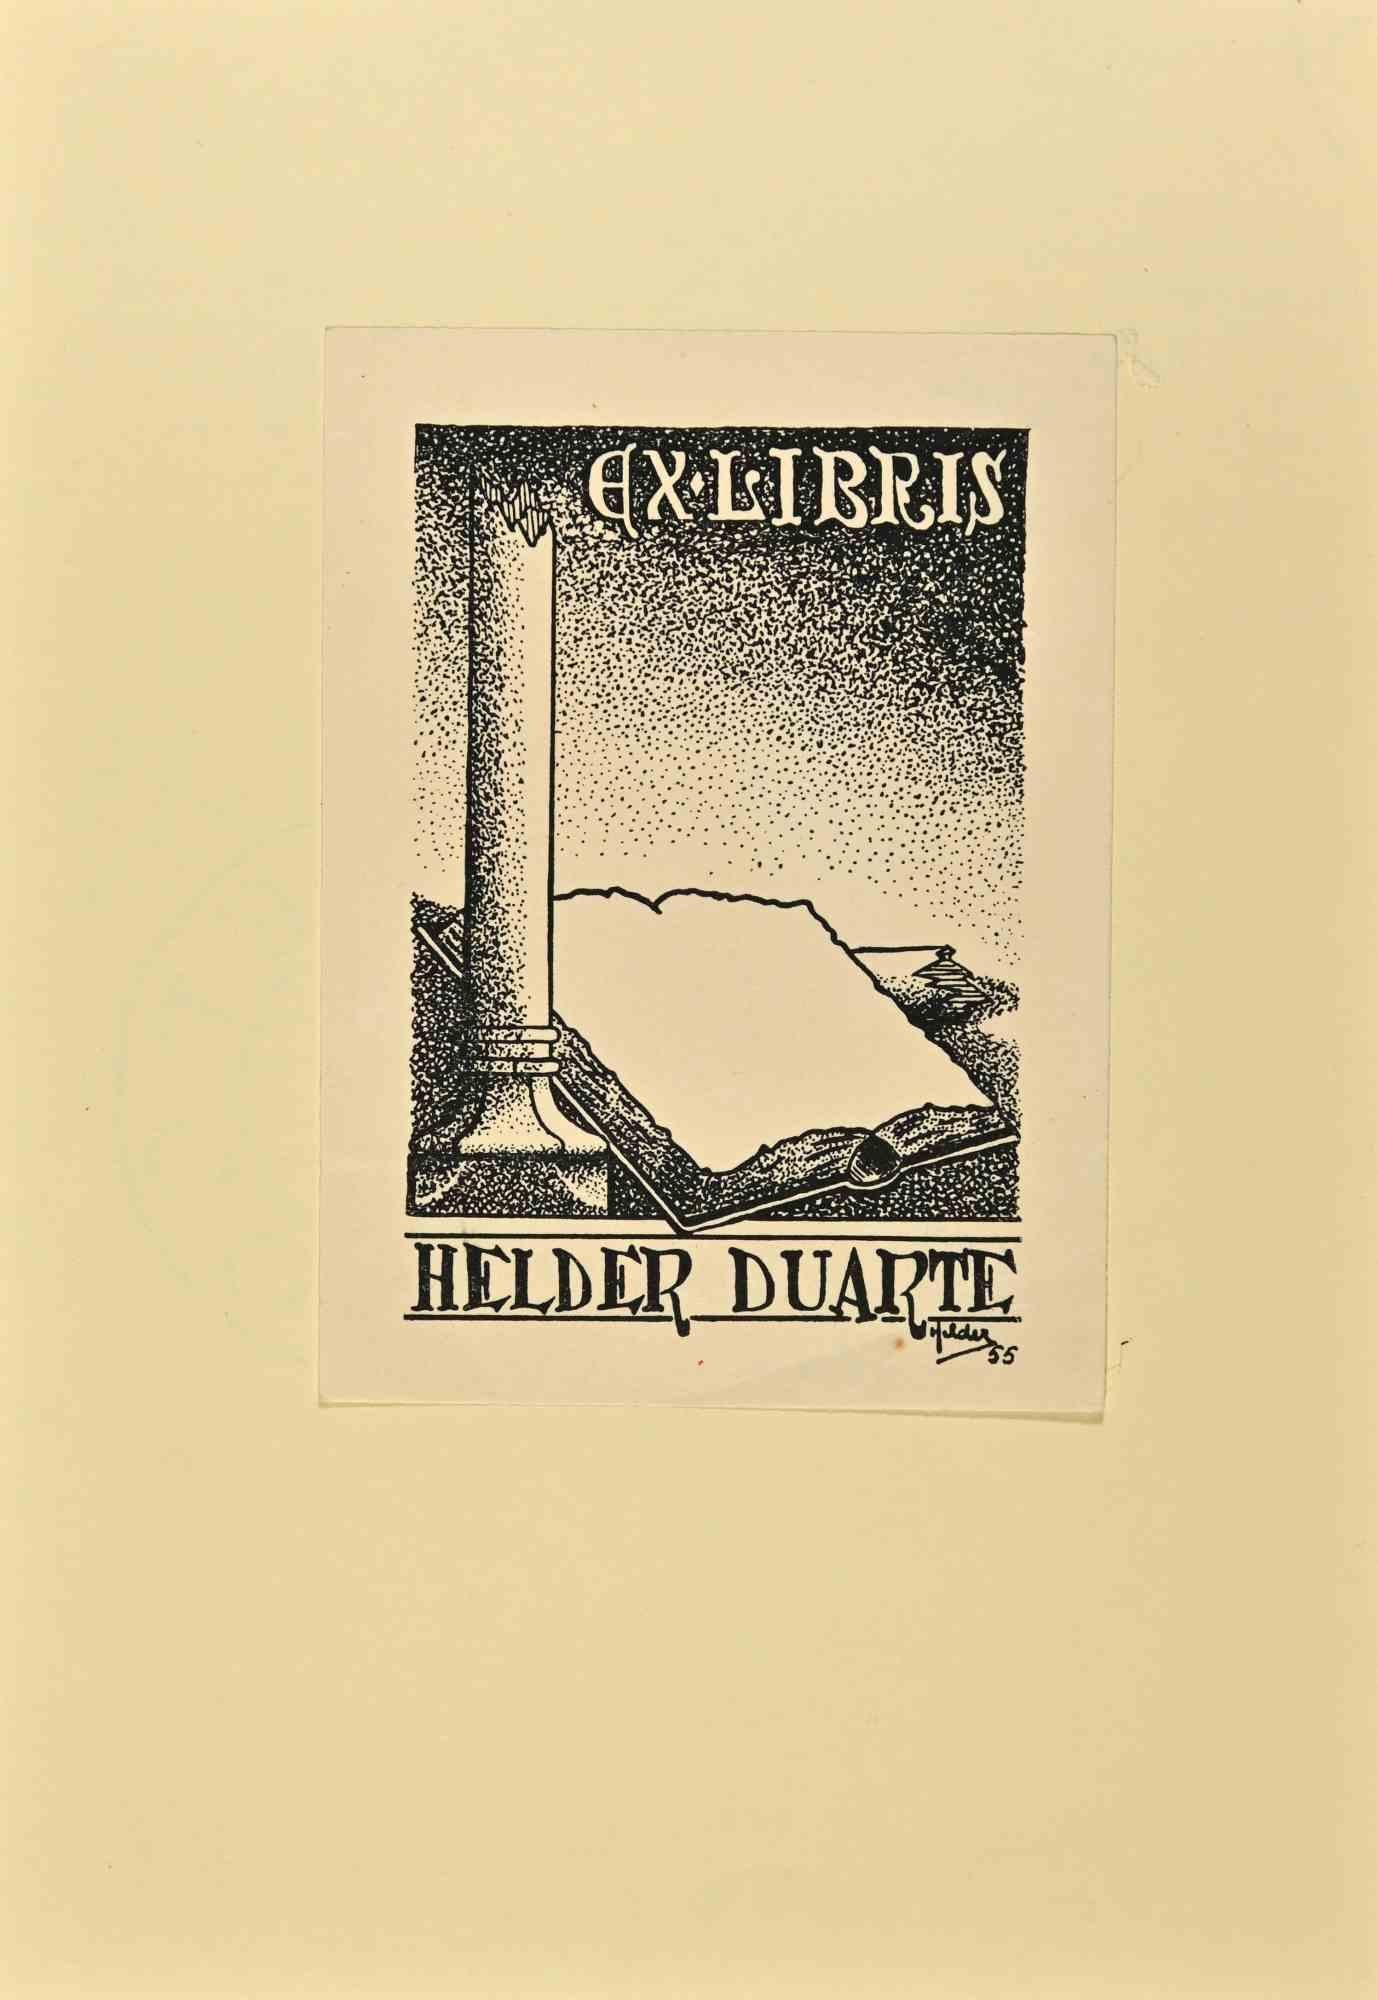 Ex Libris Helder Duarte est une œuvre d'art réalisée en 1955 par Herberto Helder (1930-2015).

Gravure sur bois B./W. sur papier. L'œuvre est collée sur un carton ivoire. 

Dimensions totales : 21 x 15 cm.

Excellentes conditions.

L'artiste veut